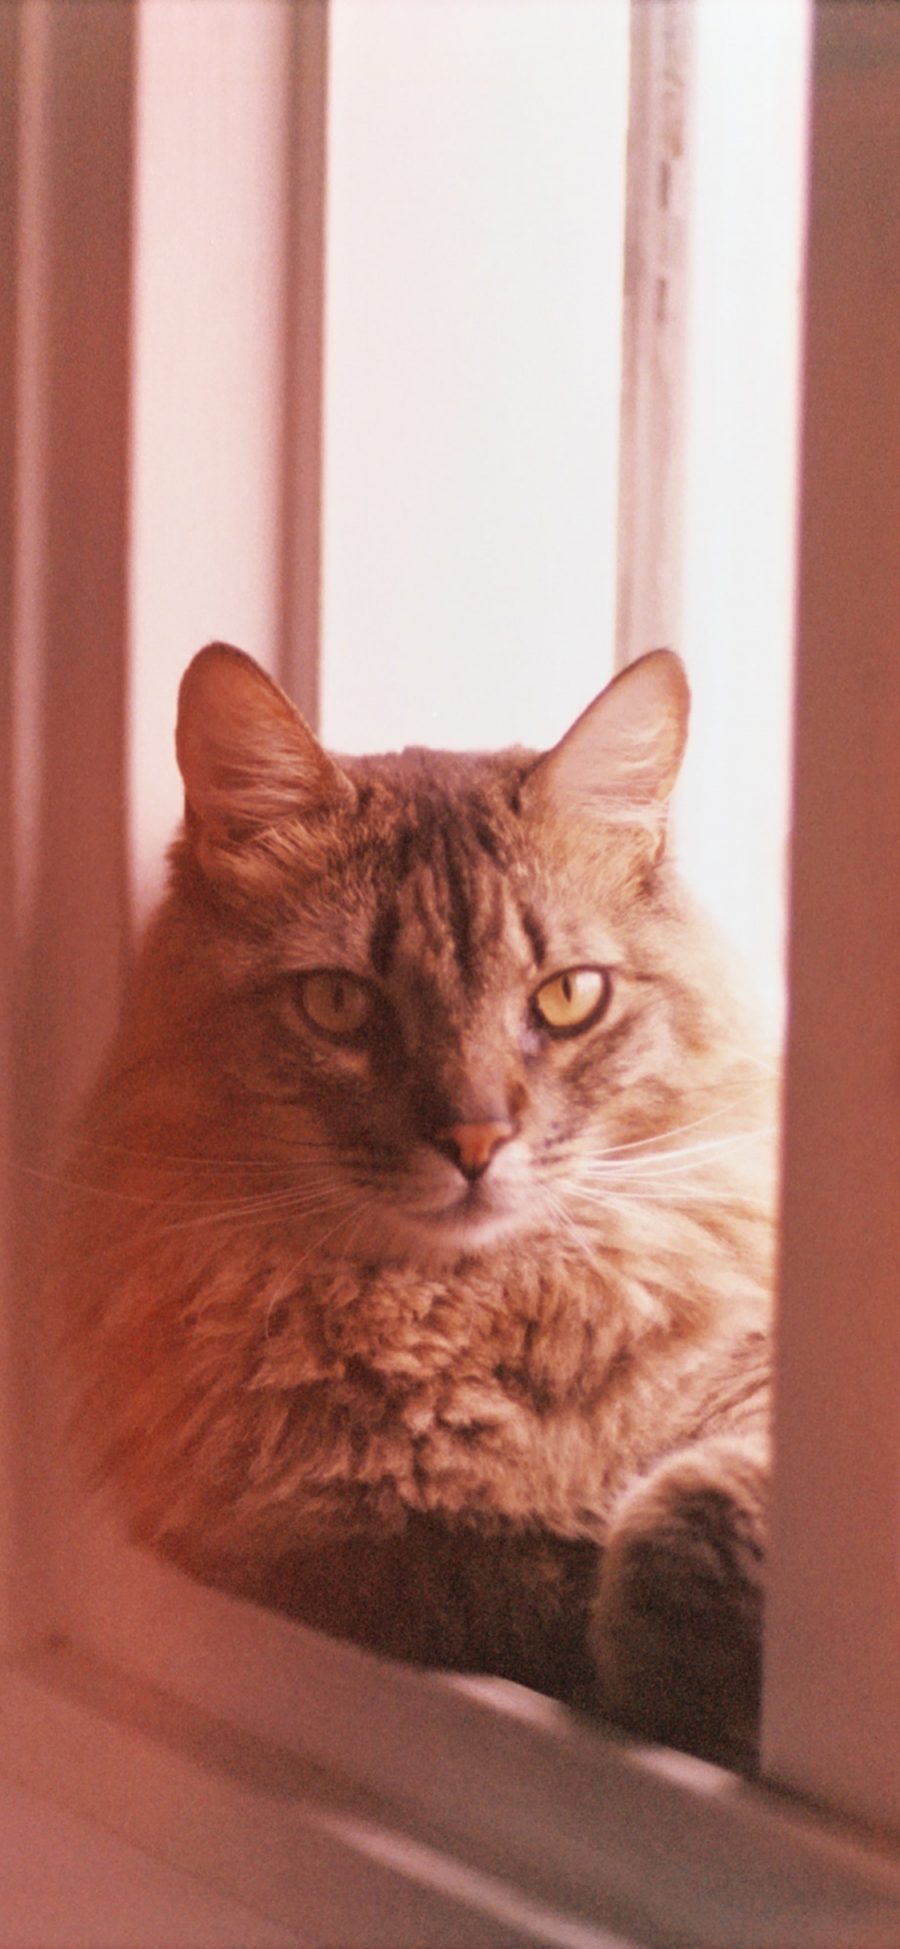 [2436×1125]窗口 猫咪 宠物猫 喵星人 苹果手机壁纸图片